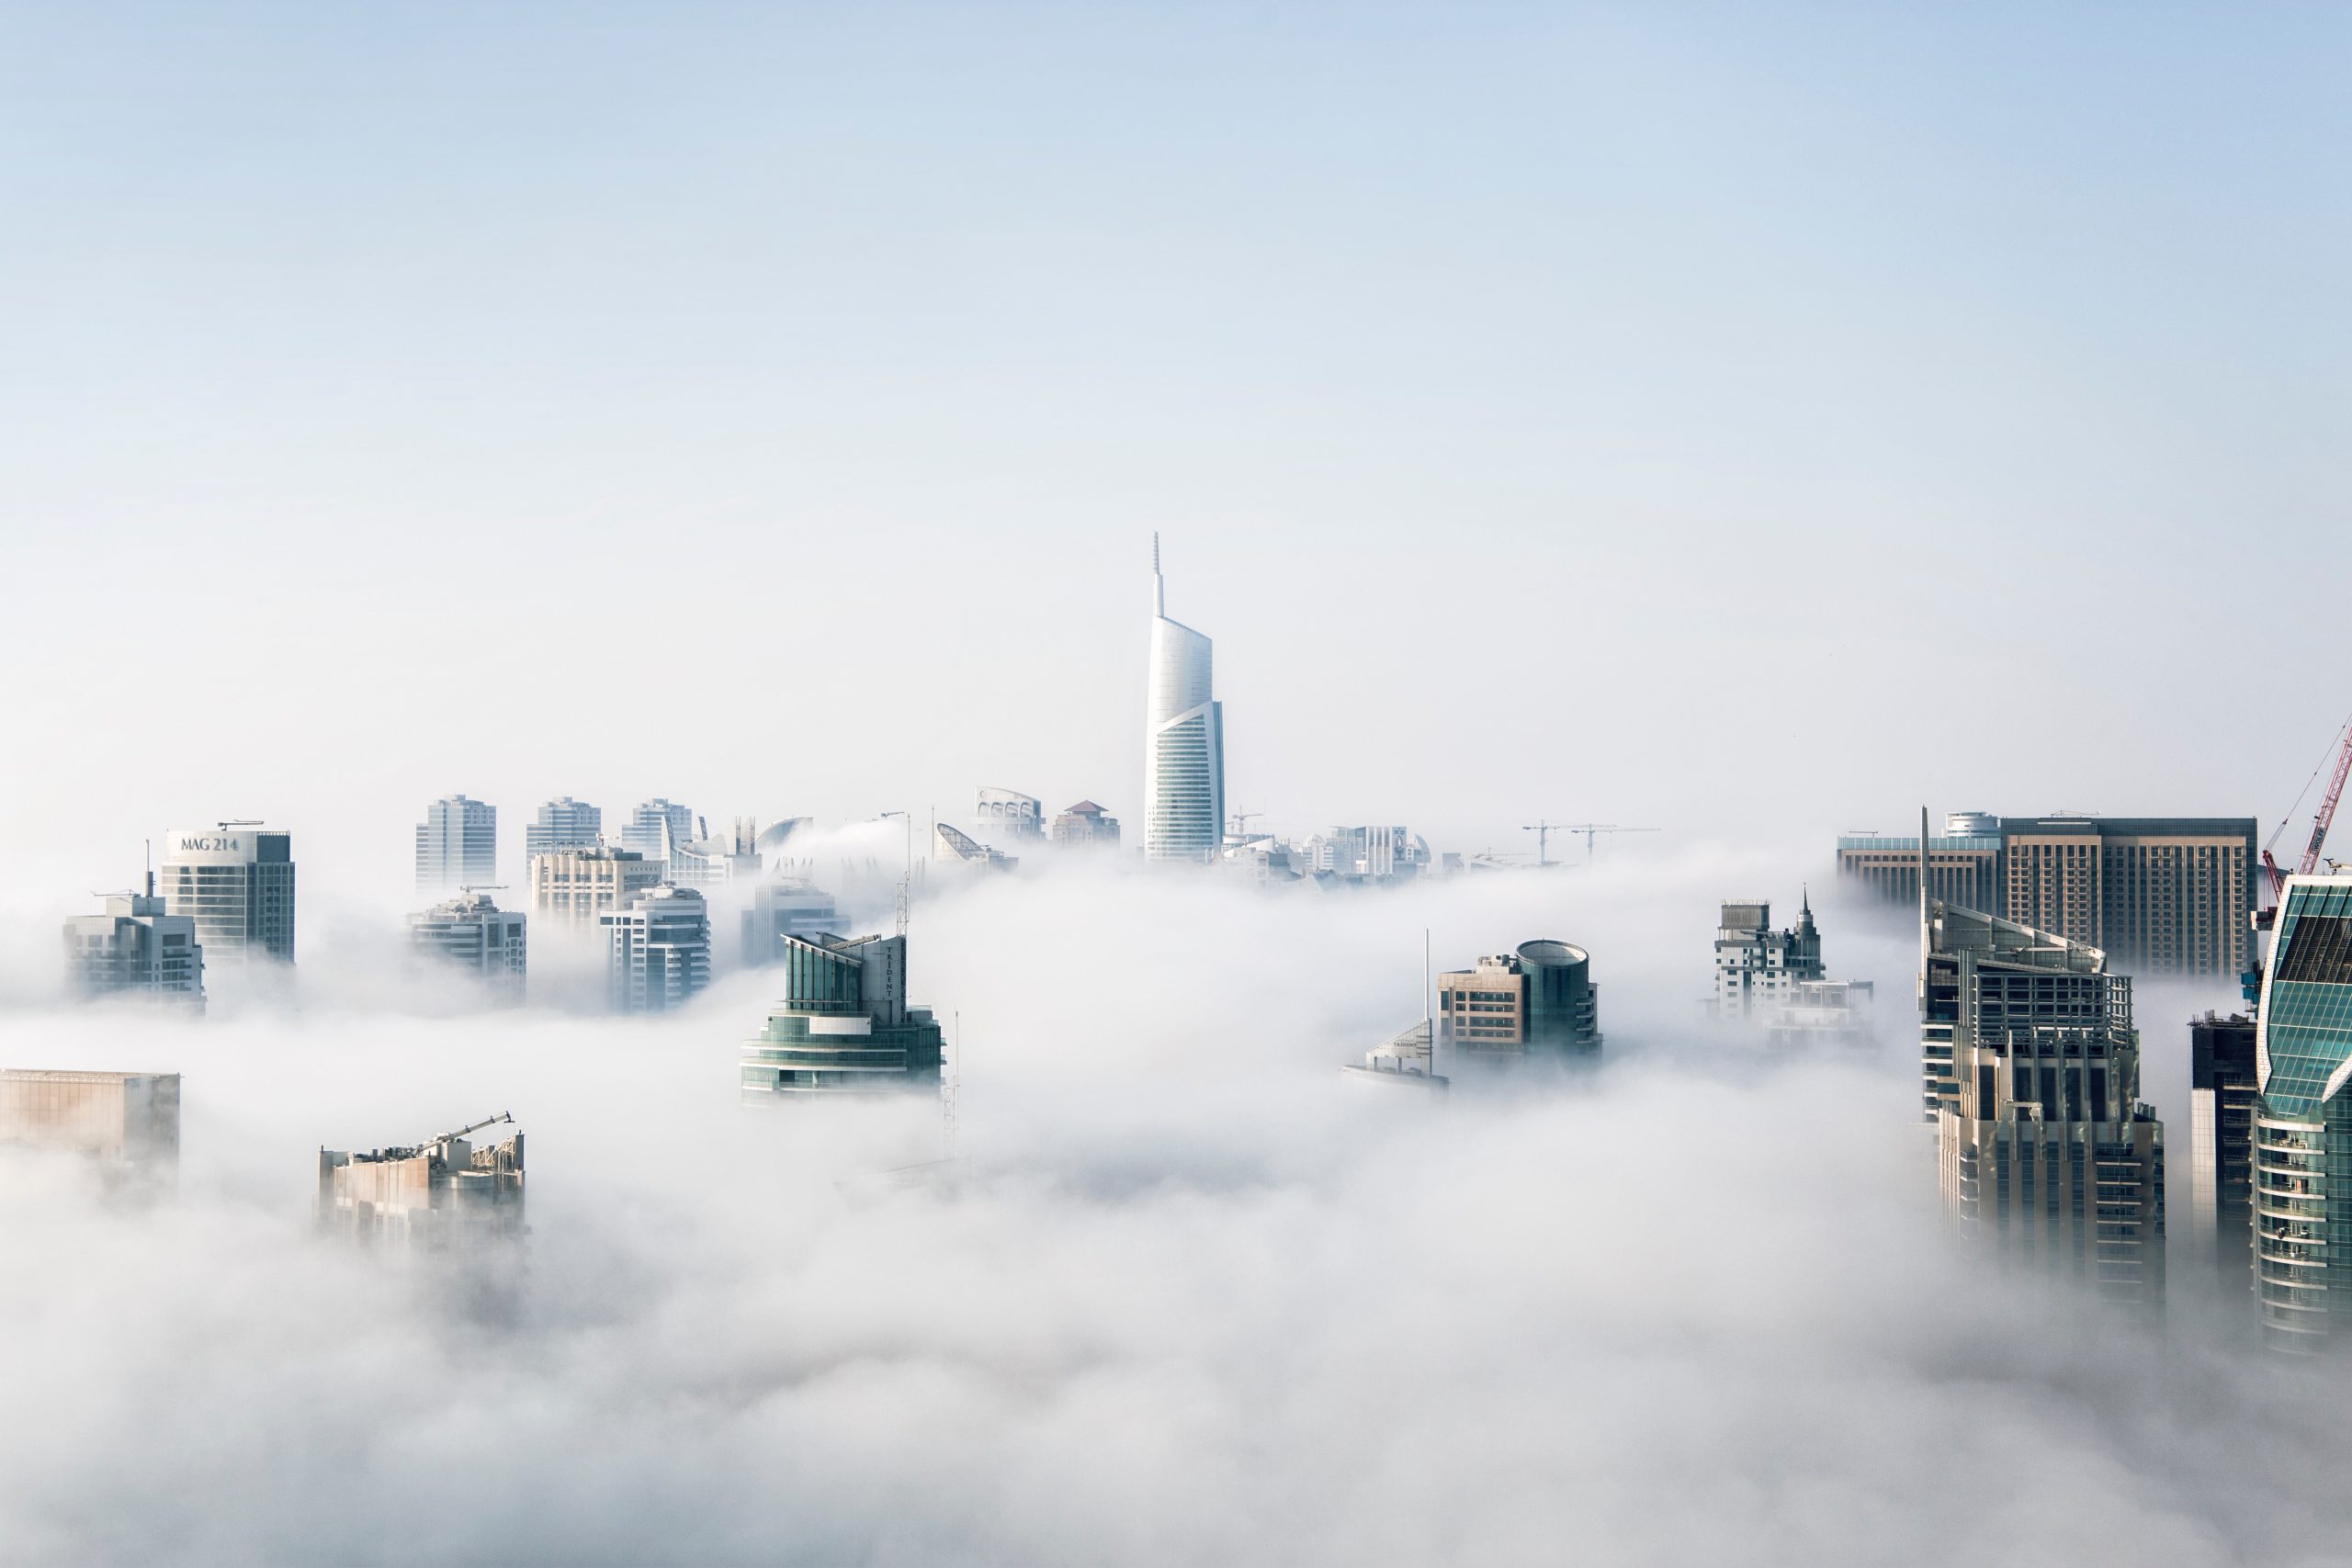 Dubái emergiendo entre las nubes